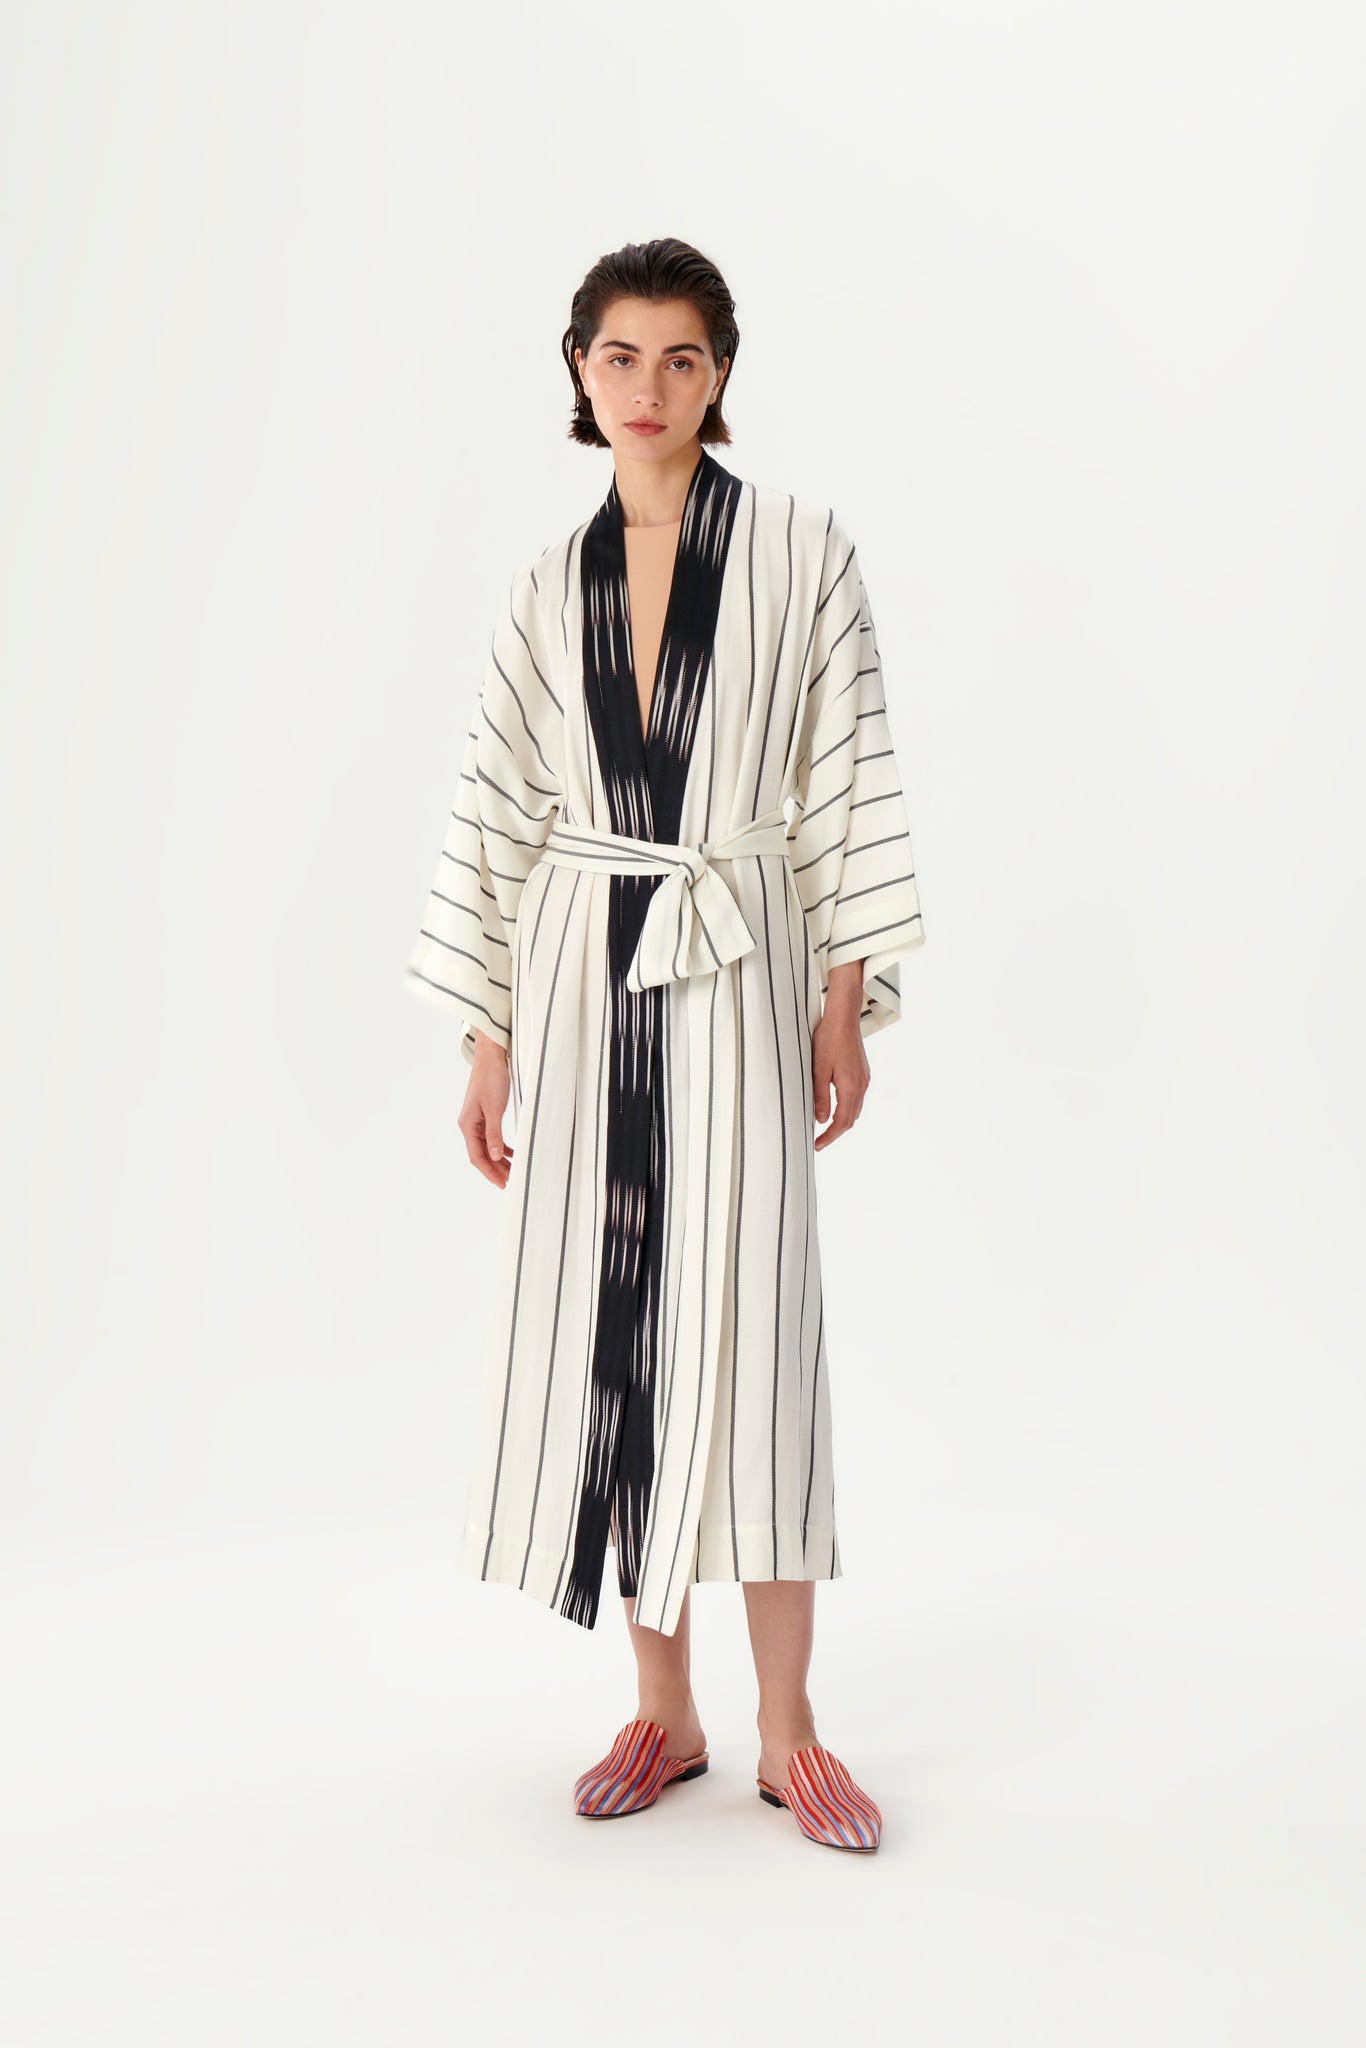 Classic Black and White Striped Kimono